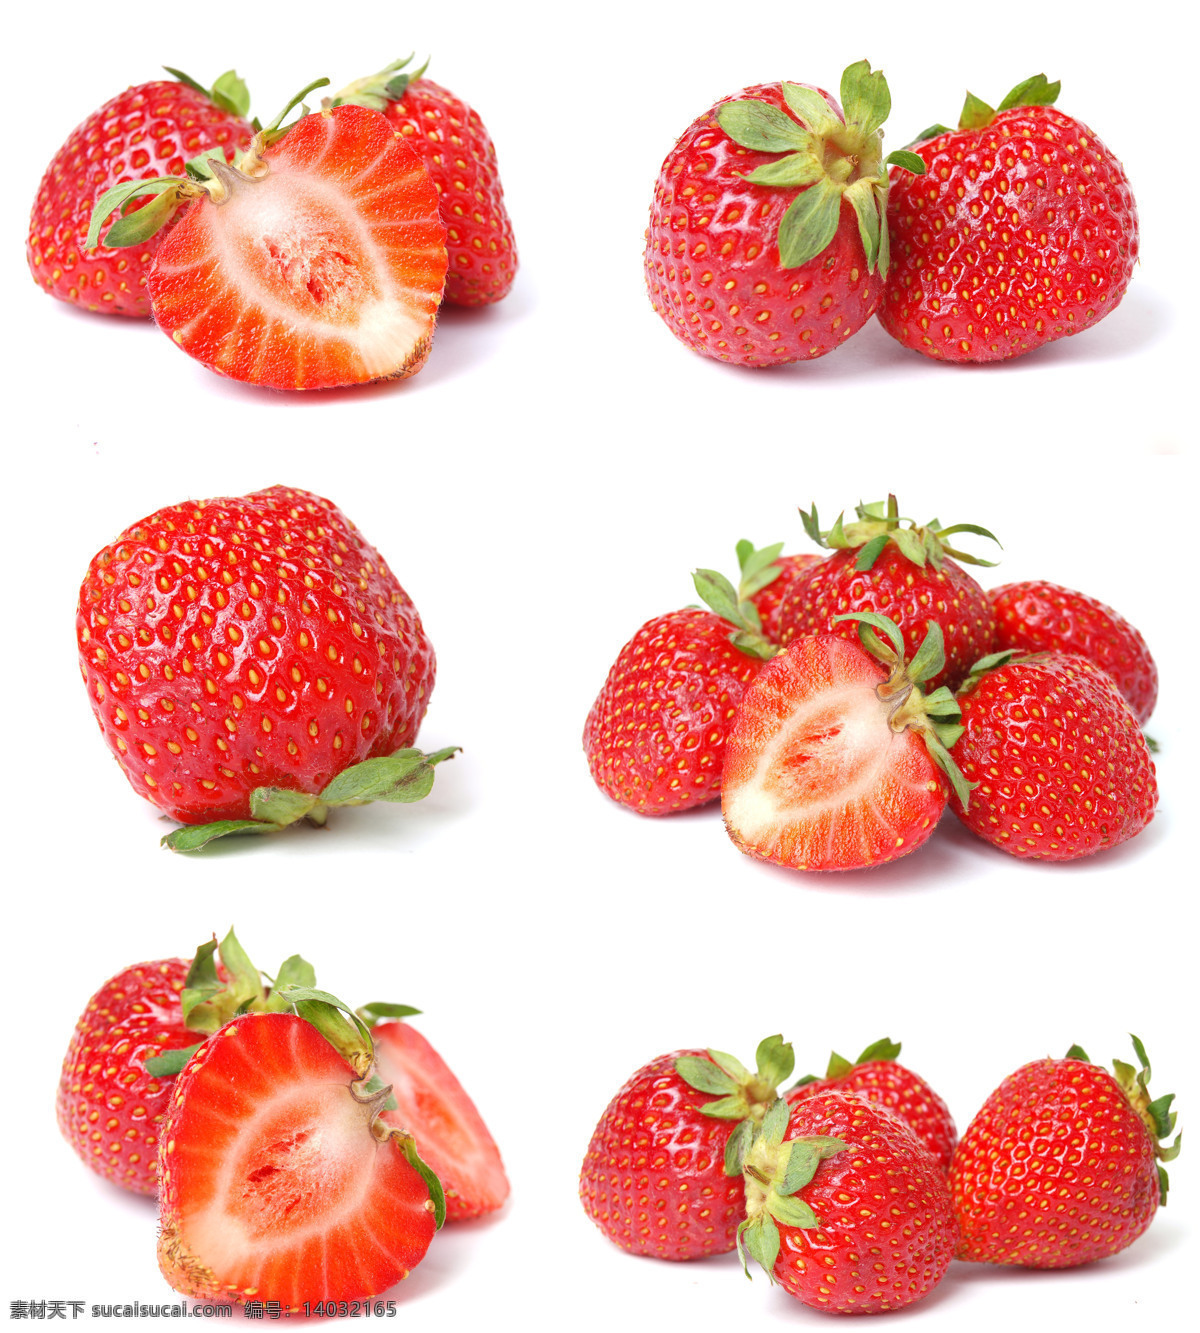 高清 草莓 草莓摄影 水果 水果摄影 水果广告 食物 蔬菜图片 餐饮美食